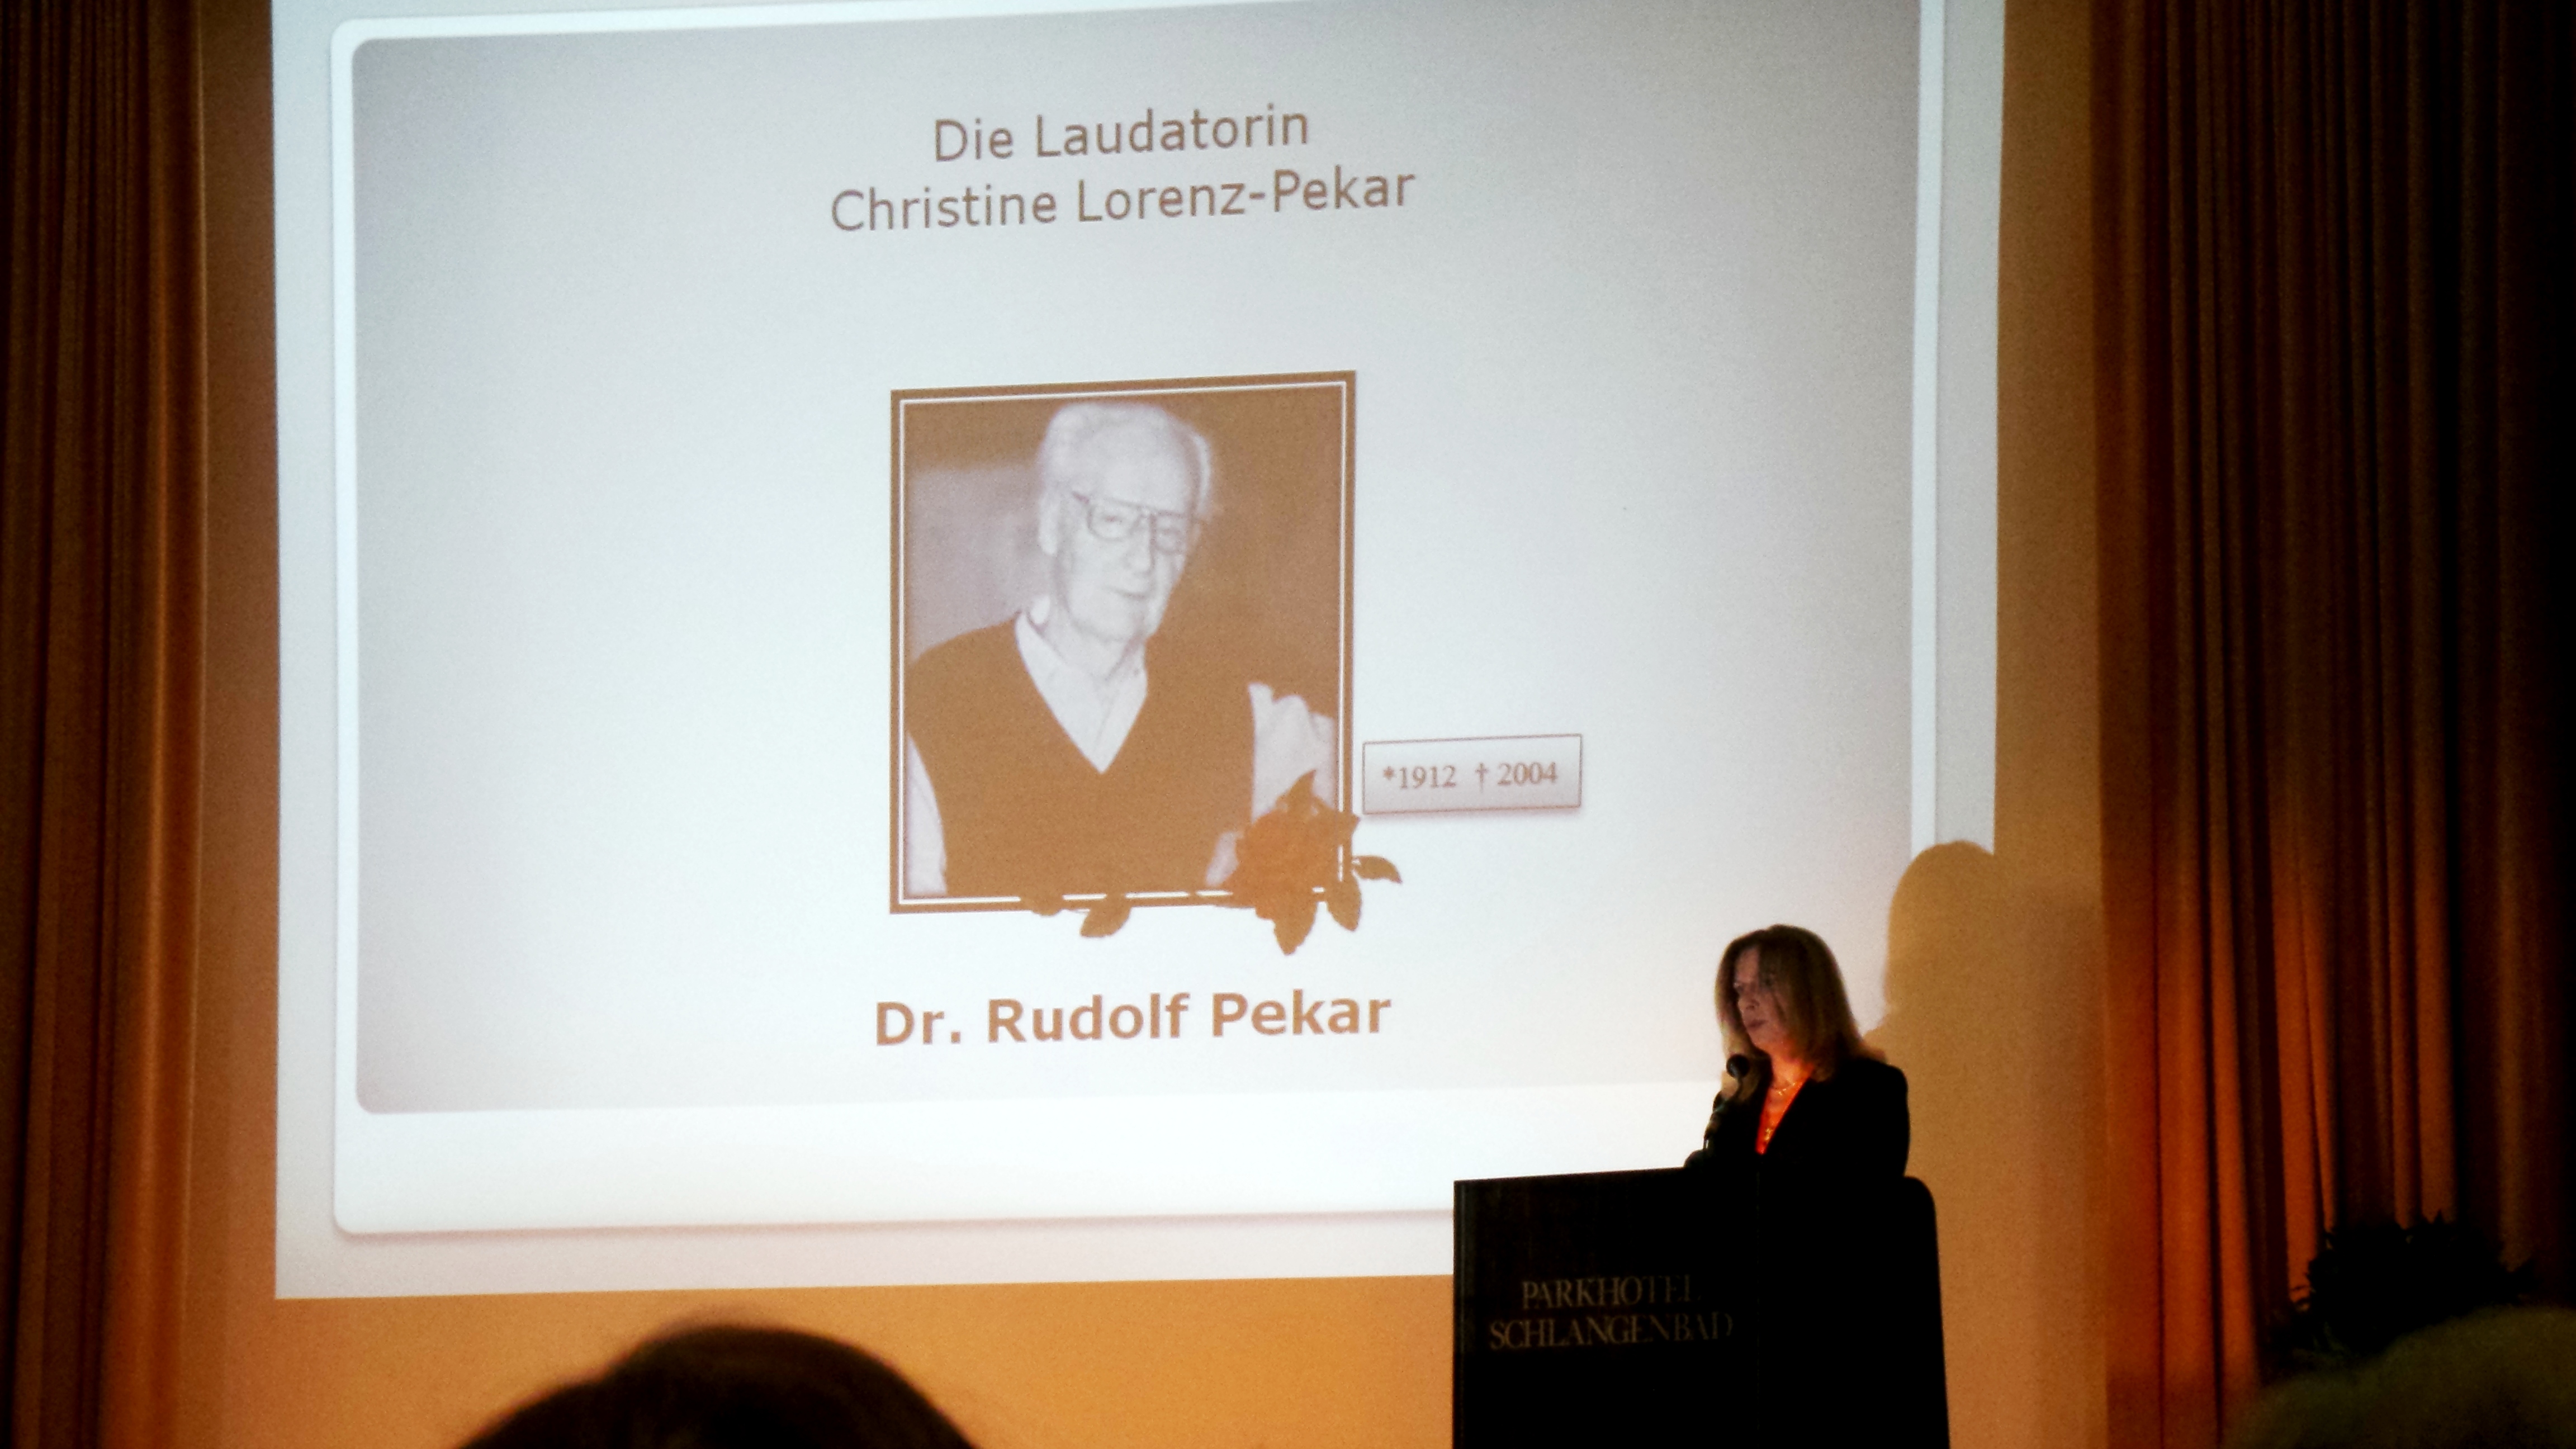 Sie war eine von 8 Laudatoren an diesem Tag, Christine Lorenz Pekar bei ihrer Laudatio zu ihrem berühmten Vater Dr. Rudolf Pekar